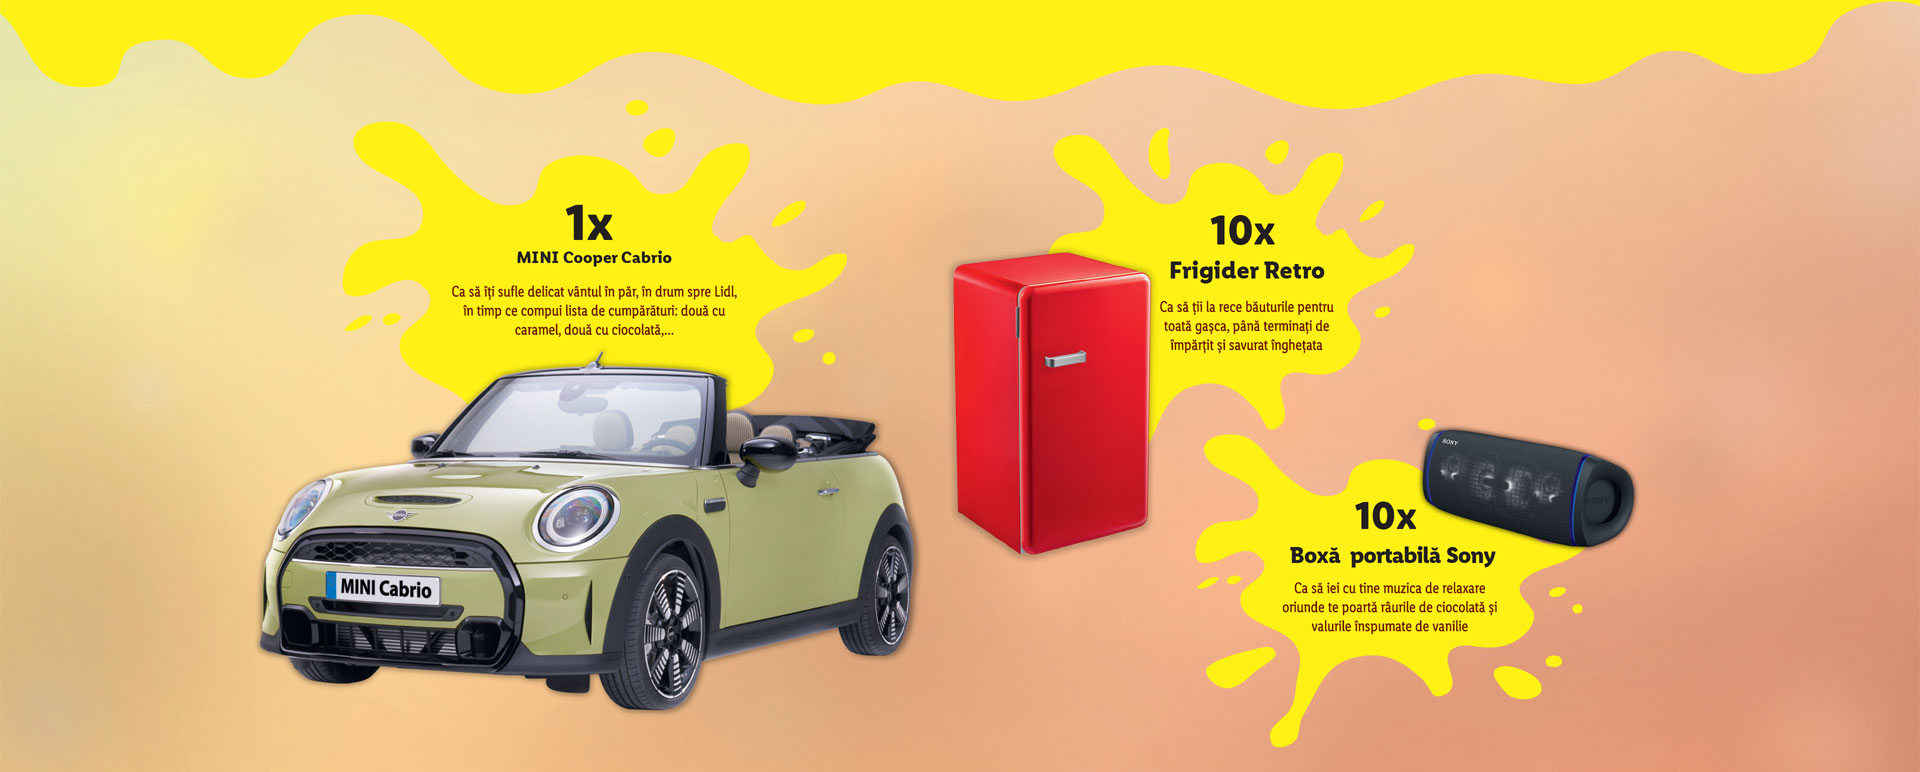 Concurs Lidl - Premii super cool cu fiecare Gelatelli sau Bon Gelati: o masina MINI Cooper Cabrio, 10 frigidere Retro sau 10 boxe portabile Sony